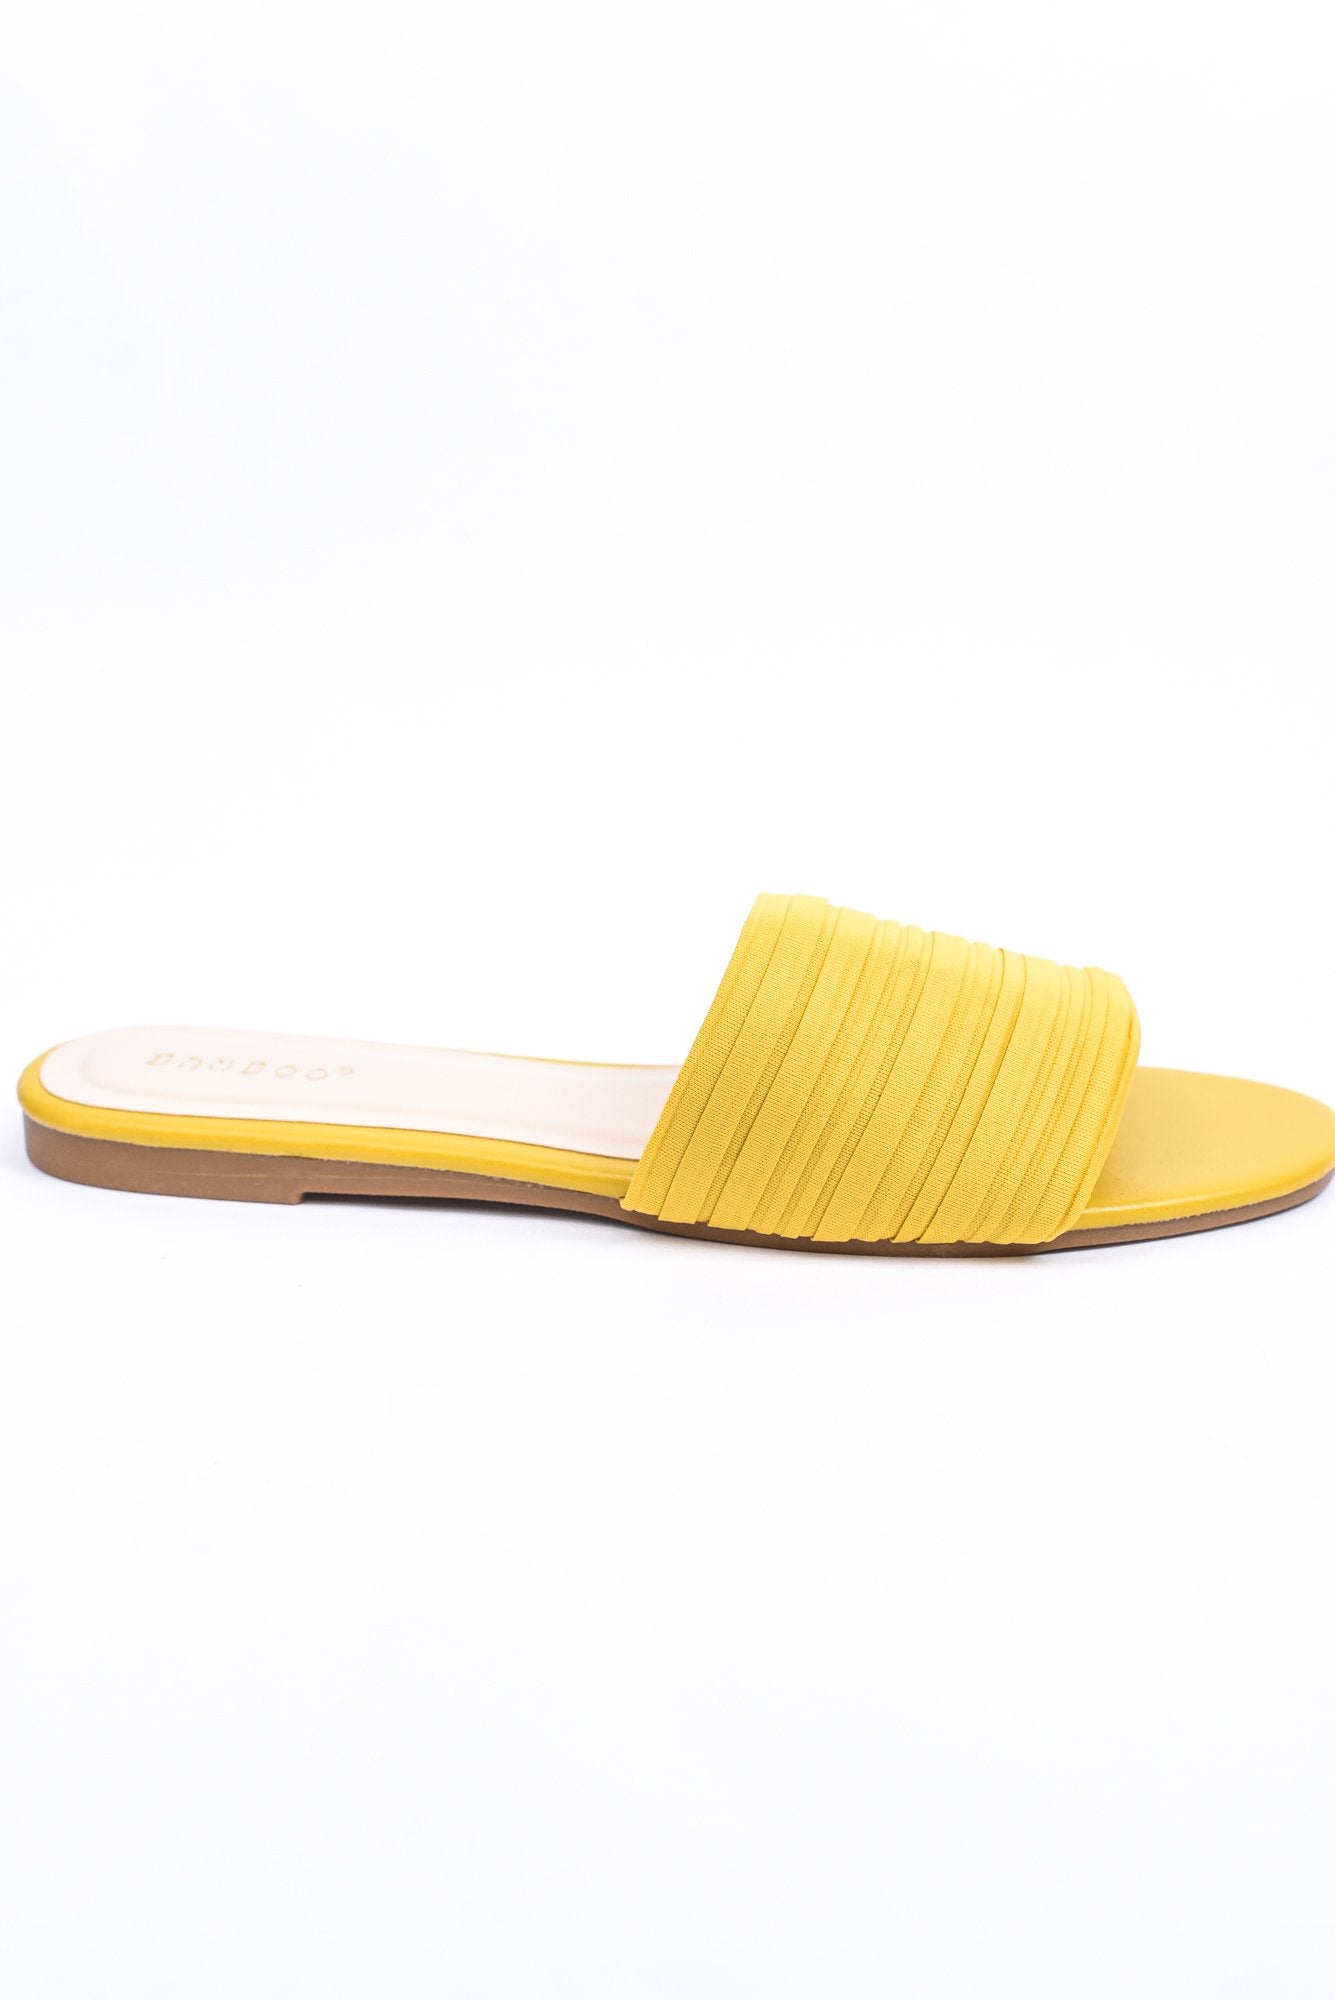 Just A Step Away Mustard Sandals - SHO1966MU